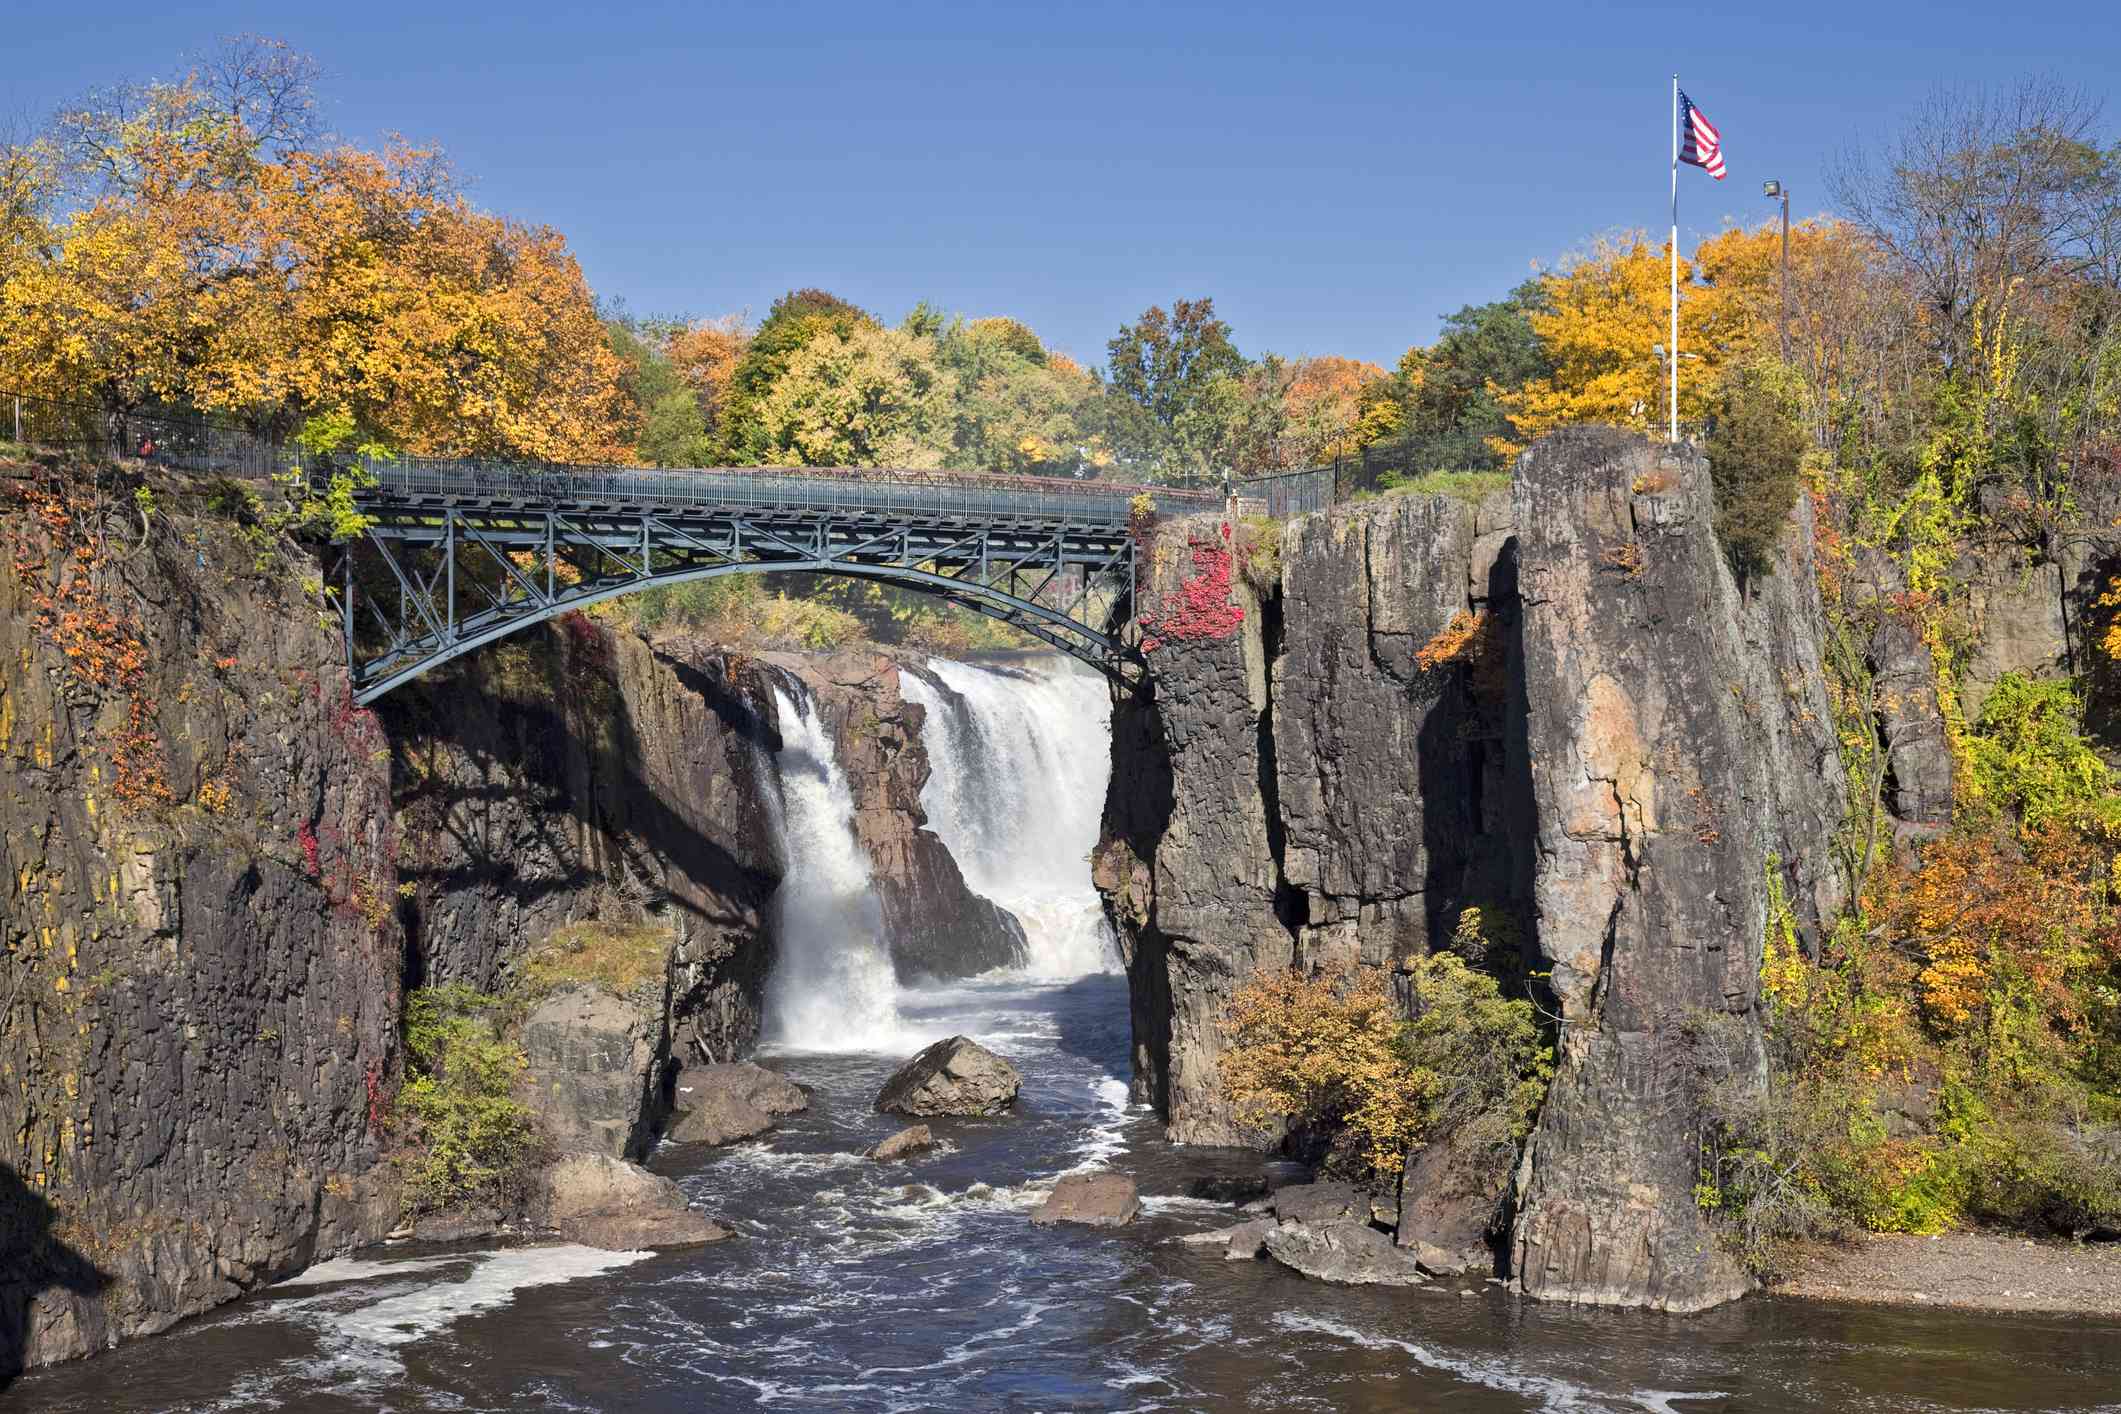 cascada detrás del puente, rodeada de altas rocas y árboles de colores durante el otoño